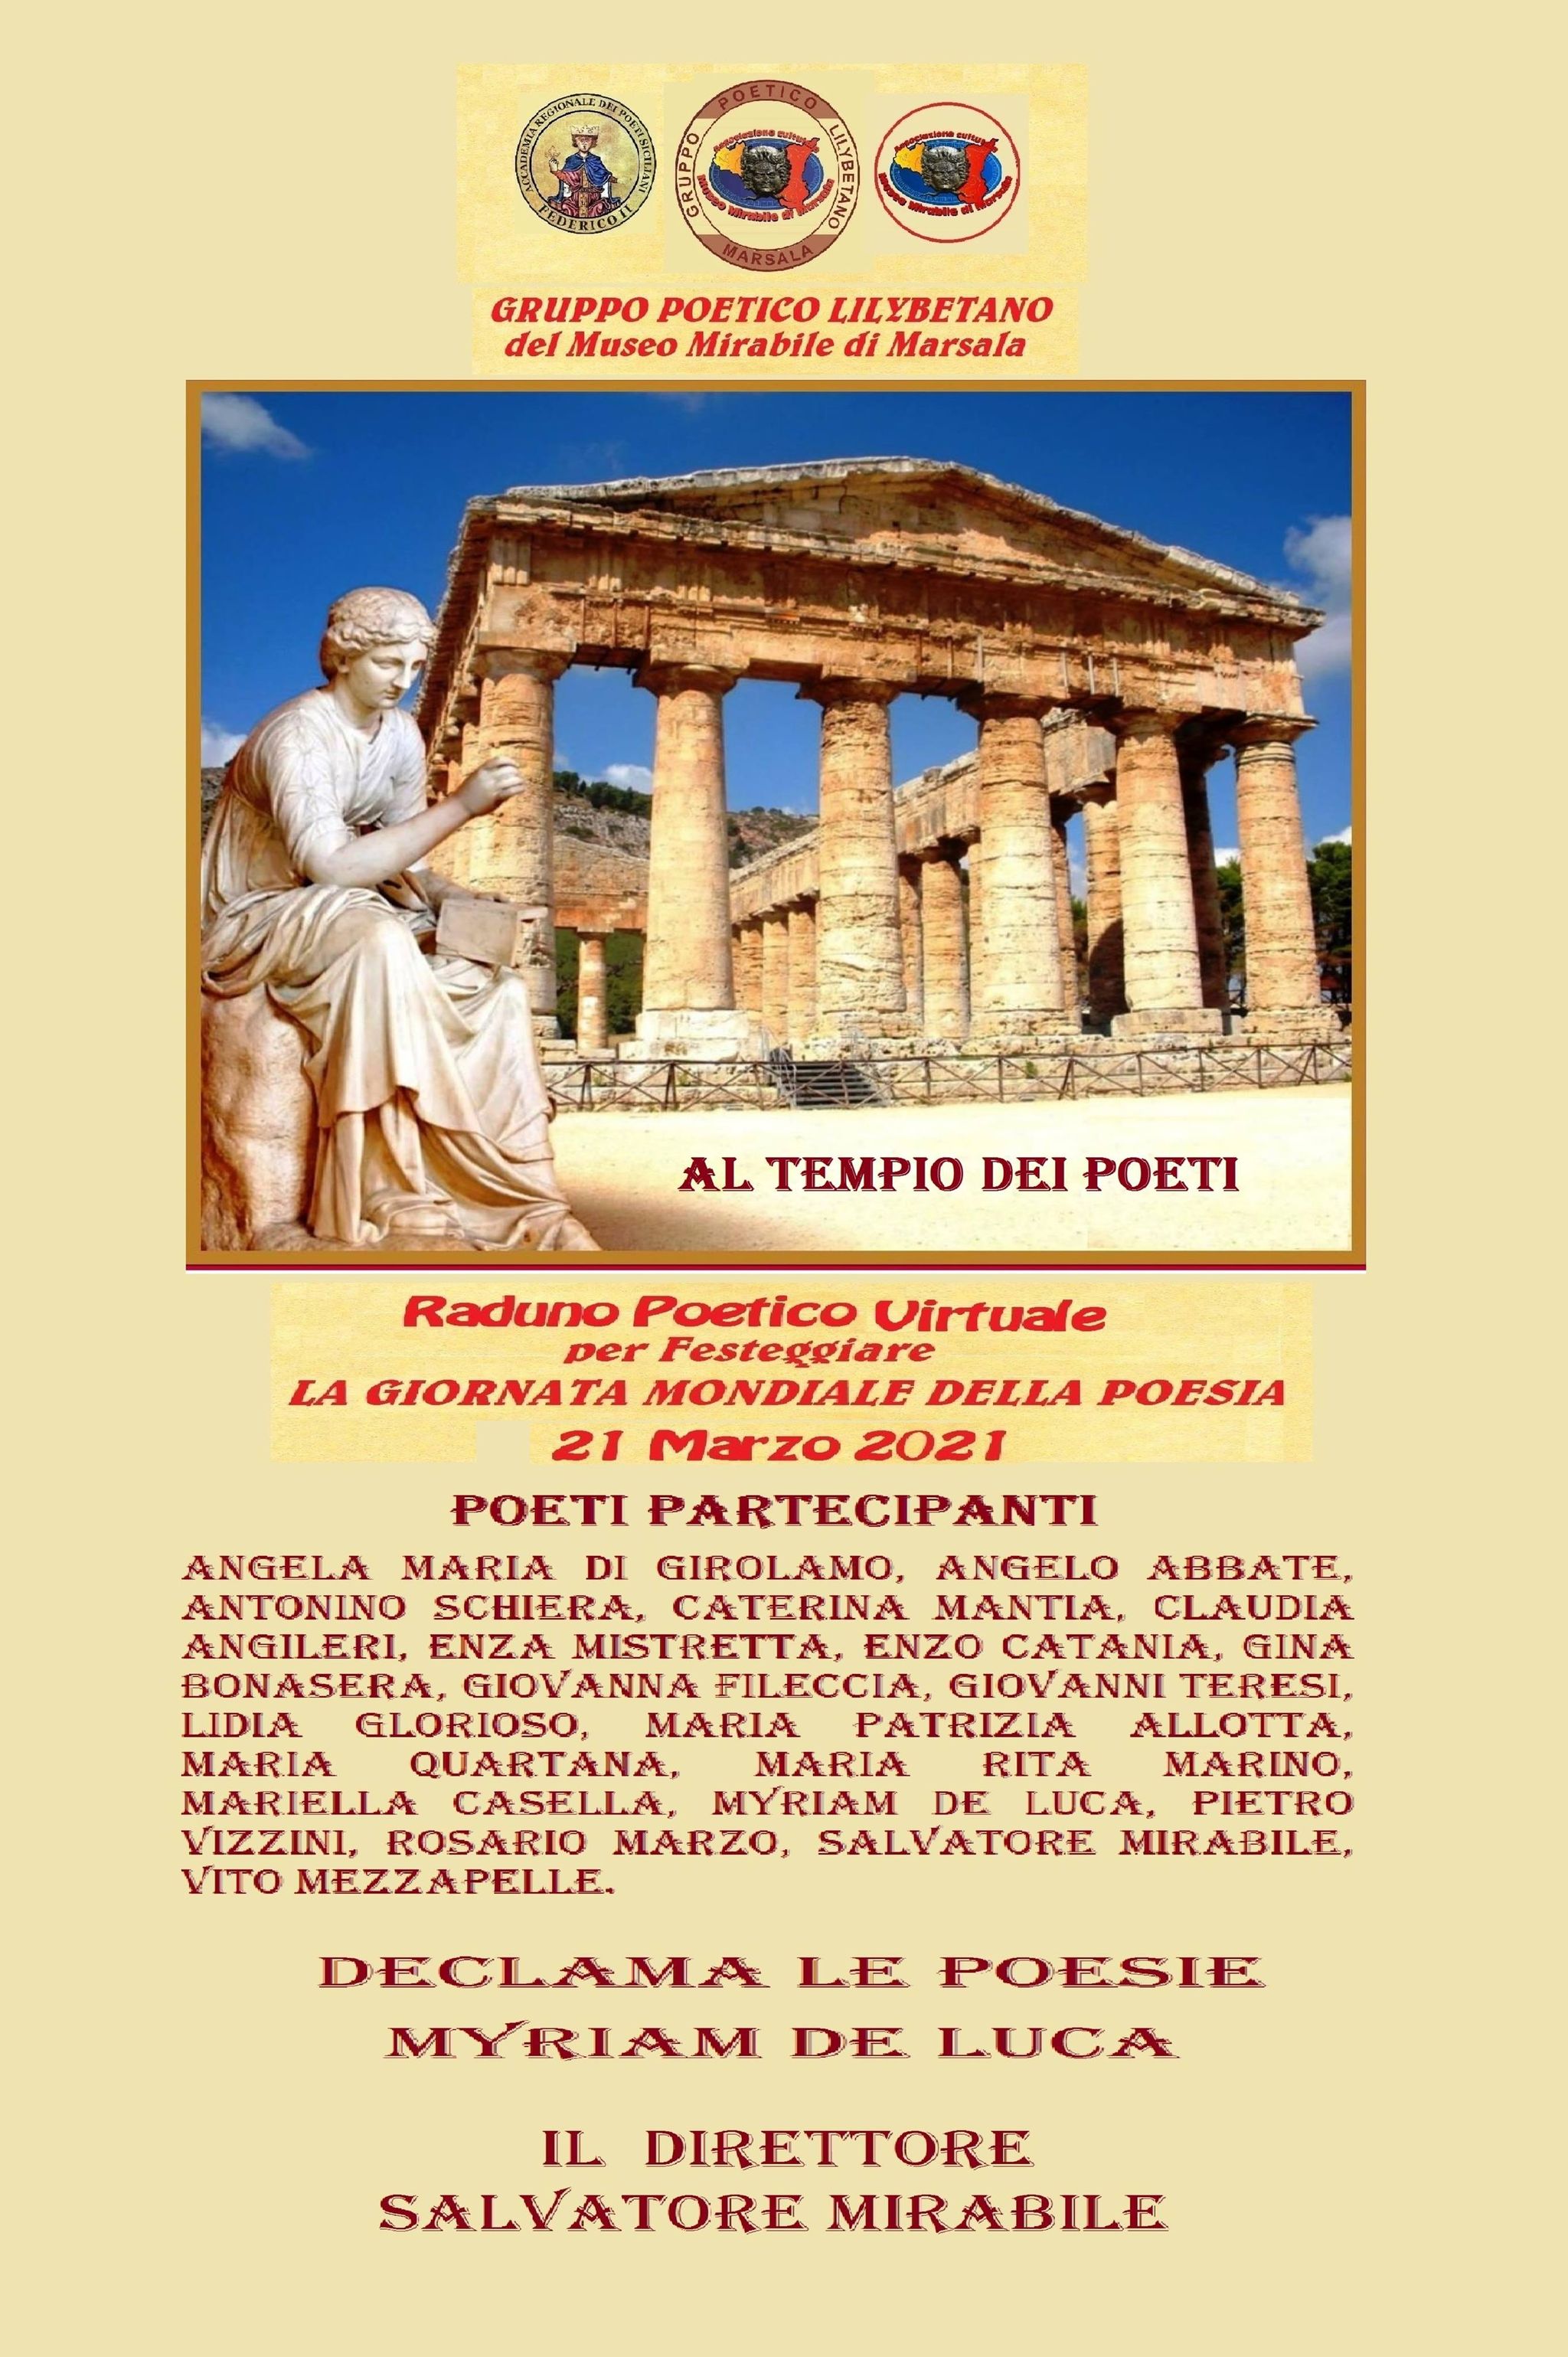 Un recital virtuale nella Giornata Mondiale della Poesia, autori siciliani aderiscono all'invito del Museo Mirabile di Marsala - Sezione Gruppo Poetico Lilybetano 